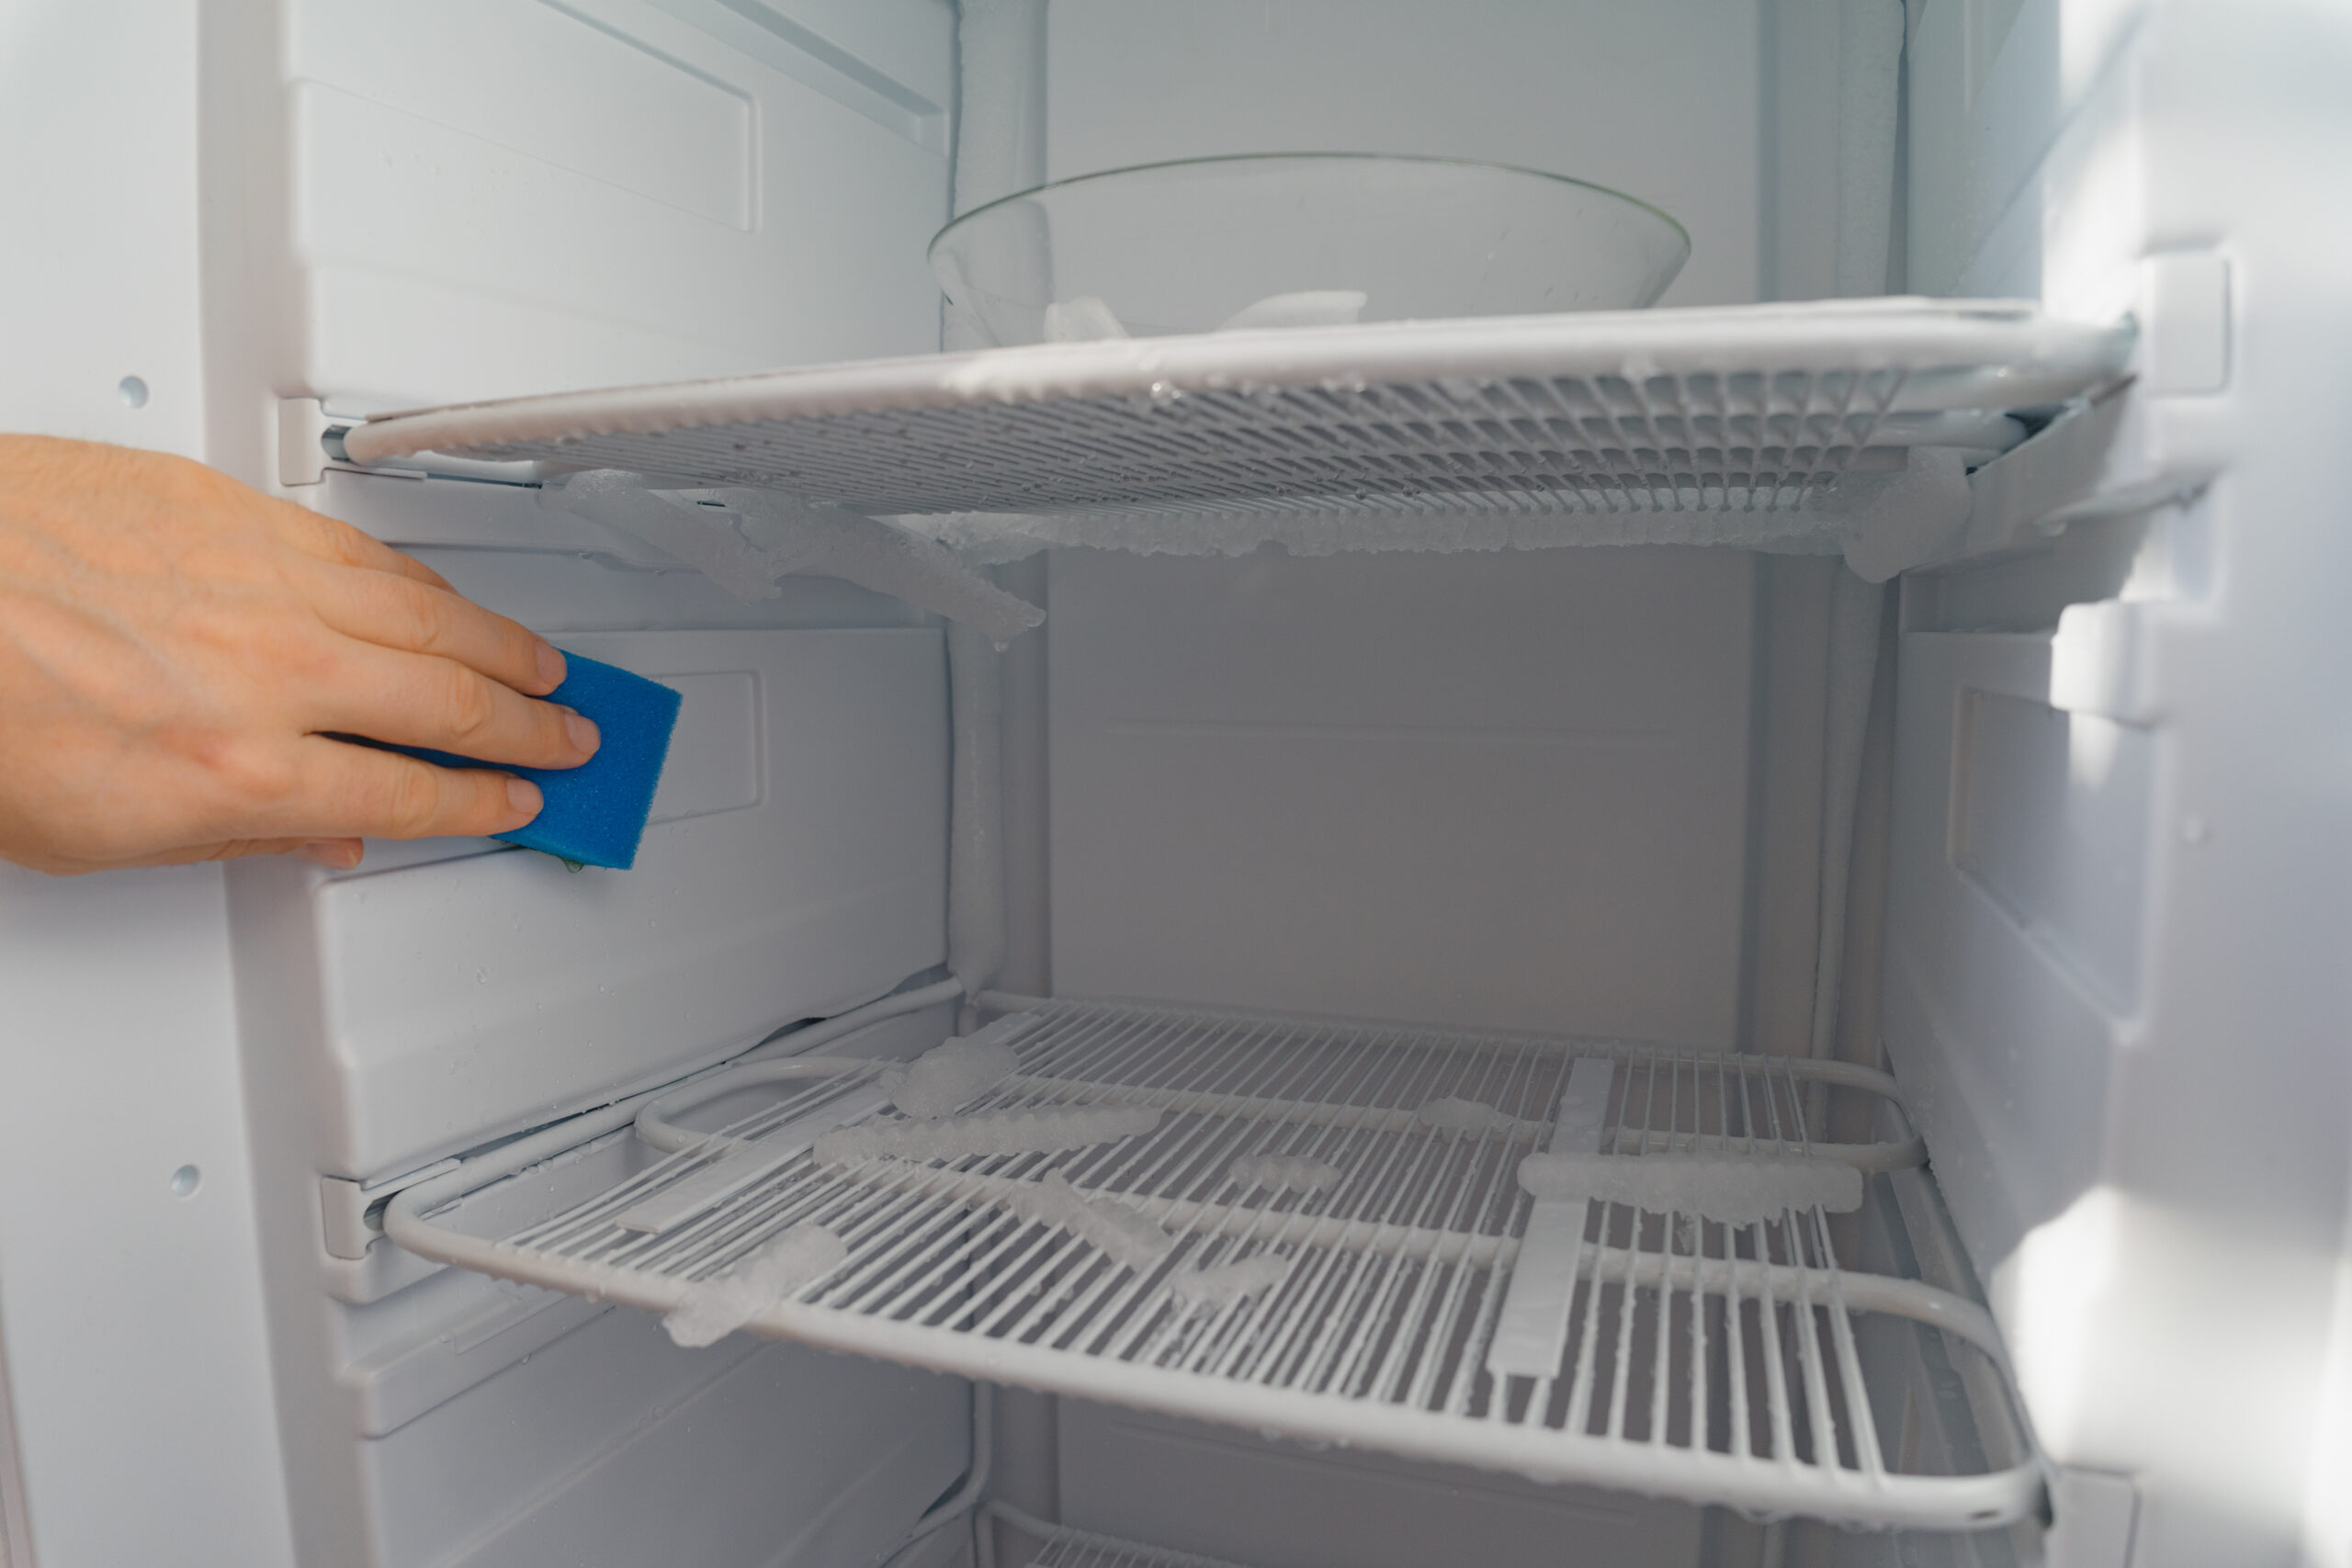 Persona continuando la limpieza del congelador con bayeta azul para remover olores